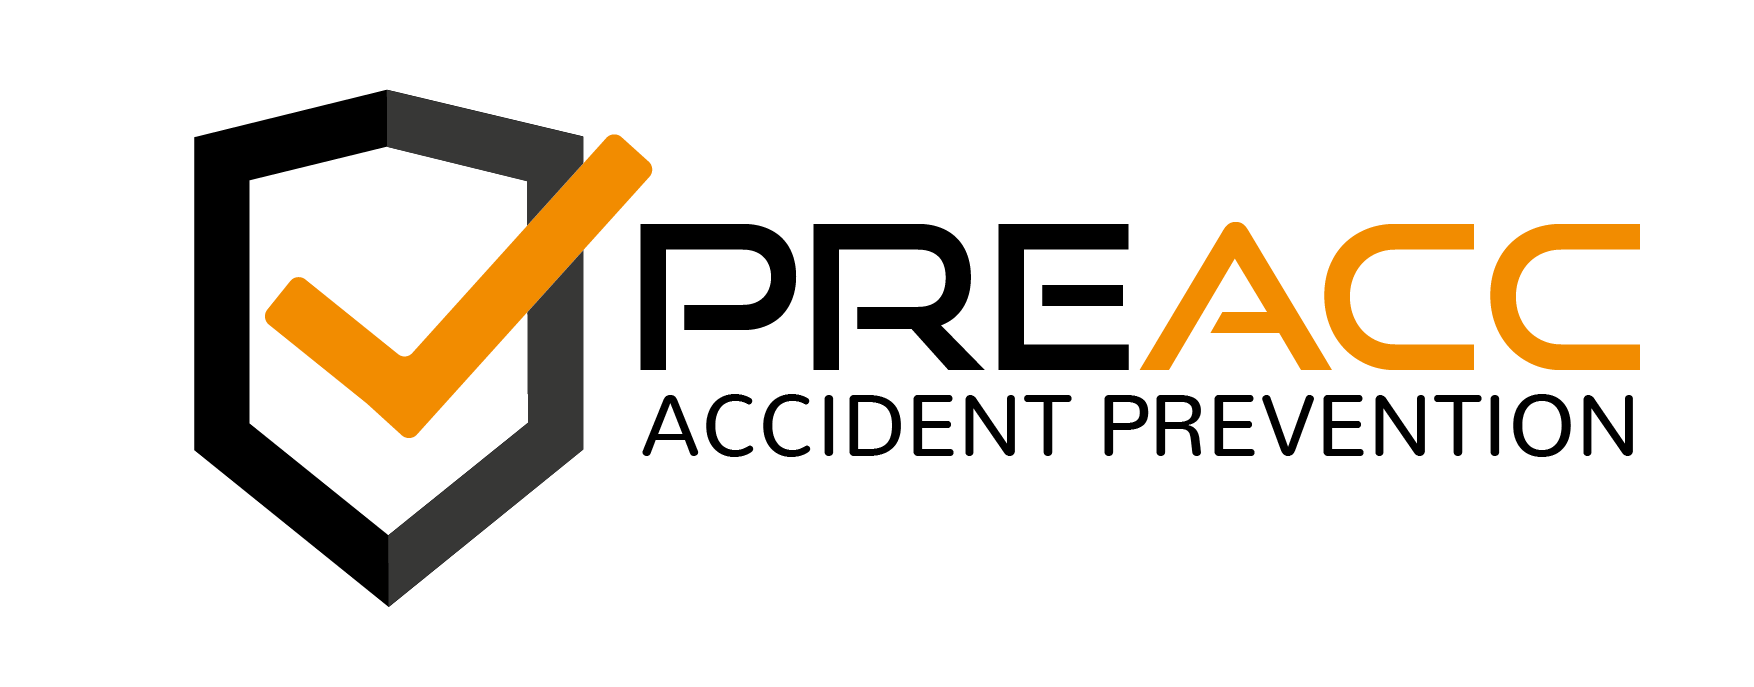 PreAcc_Logo-met-tekst_Tekengebied-1